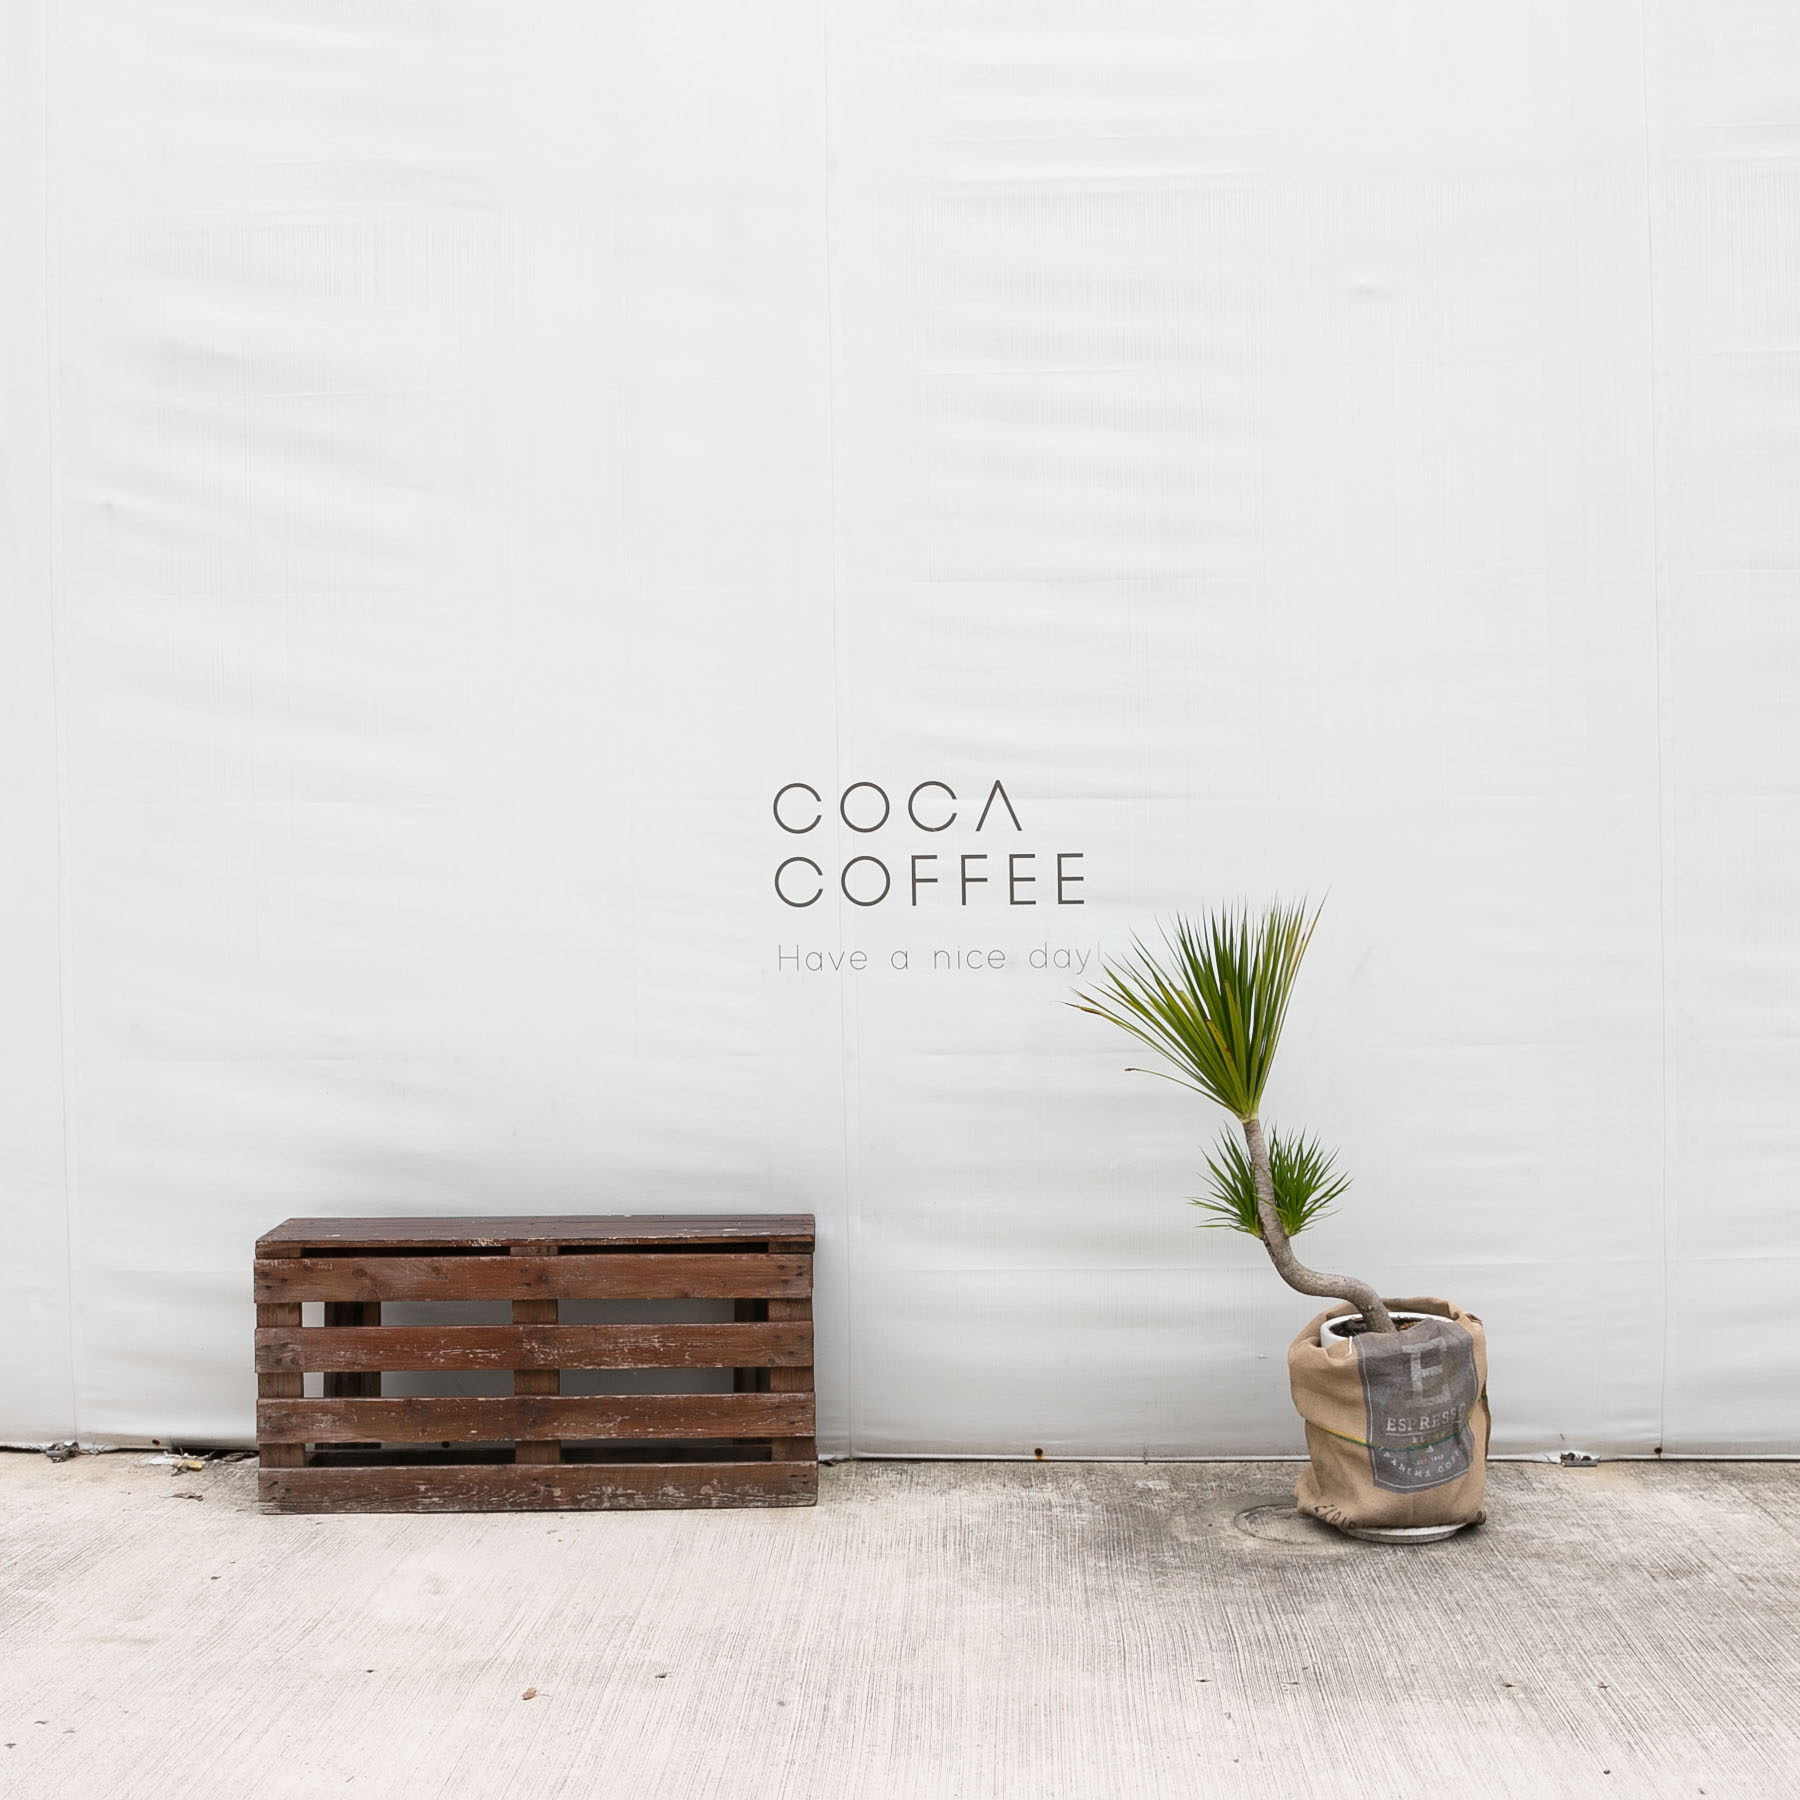 新竹美食-渴口手沖咖啡COCA COFFEE，新竹竹北咖啡廳、高鐵旁的小曼谷、平價手沖咖啡。